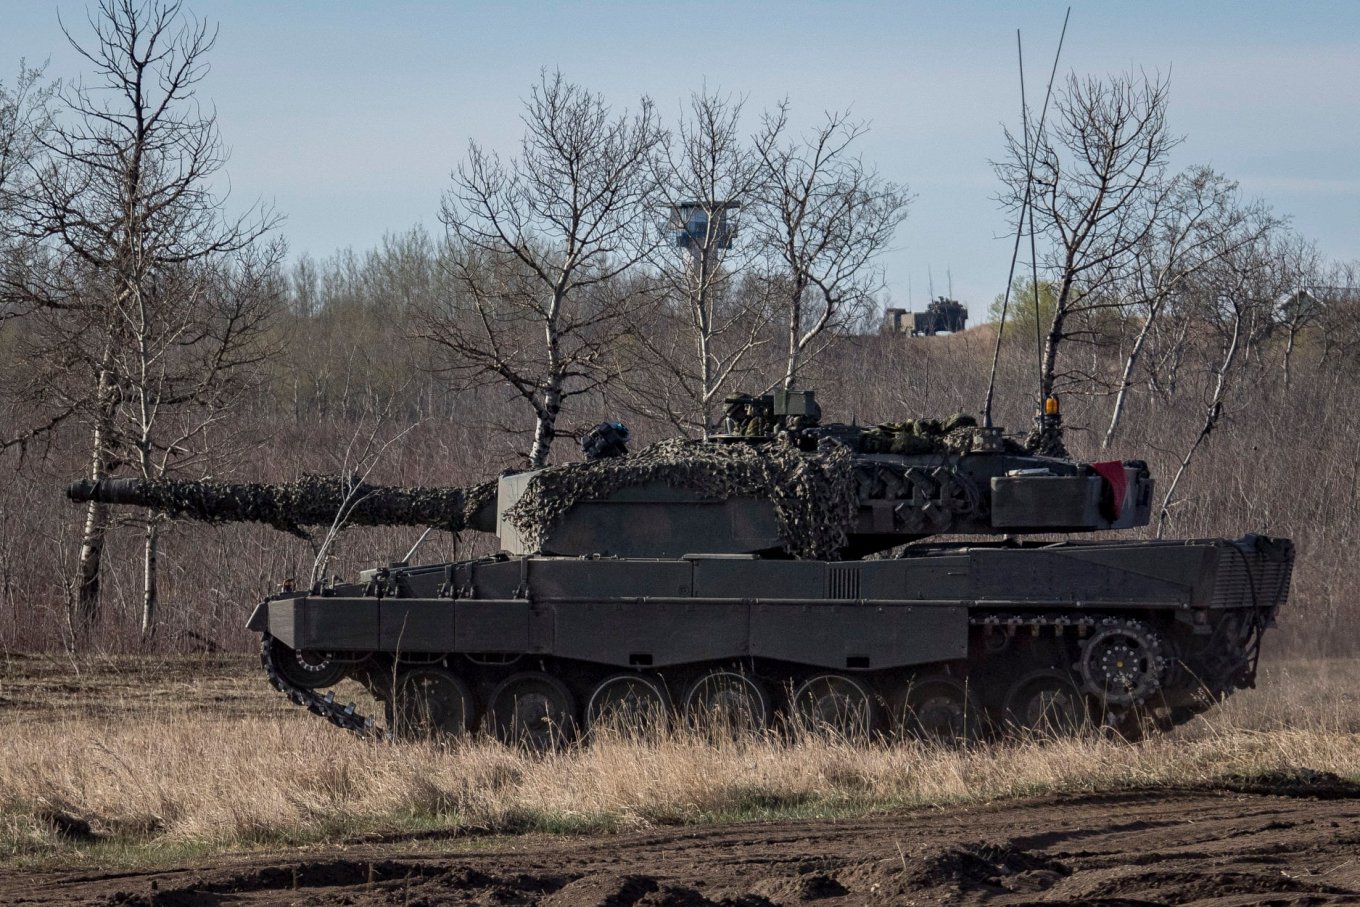 Leopard 2A4M, Canada